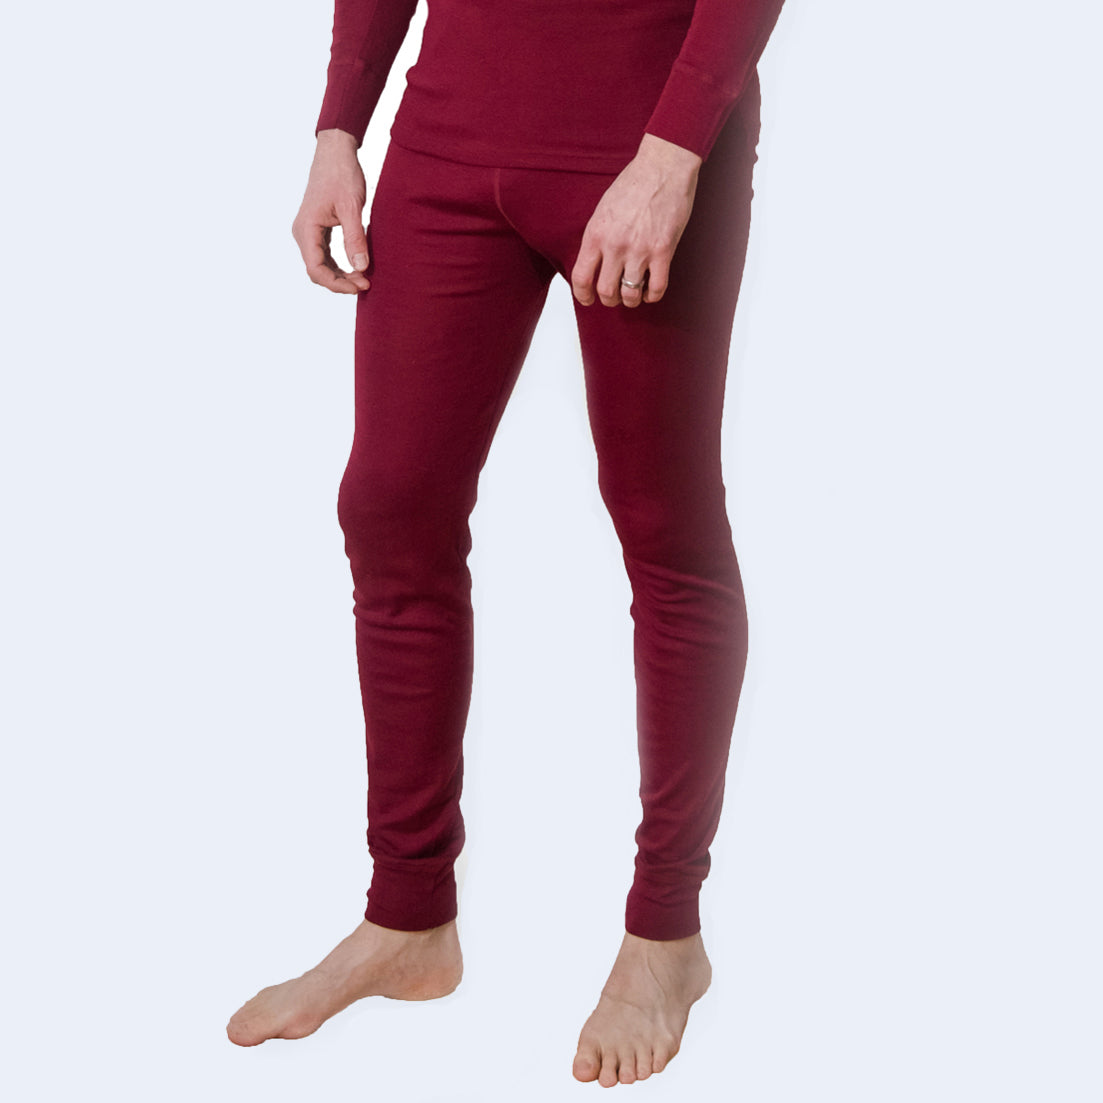 Rib Wool Leggings / Cashmere Blended Leggings / Leggings for Women / Extra  Soft Stretchable Leggings / Wool Knit Tights / Sweater Leggings -   Denmark